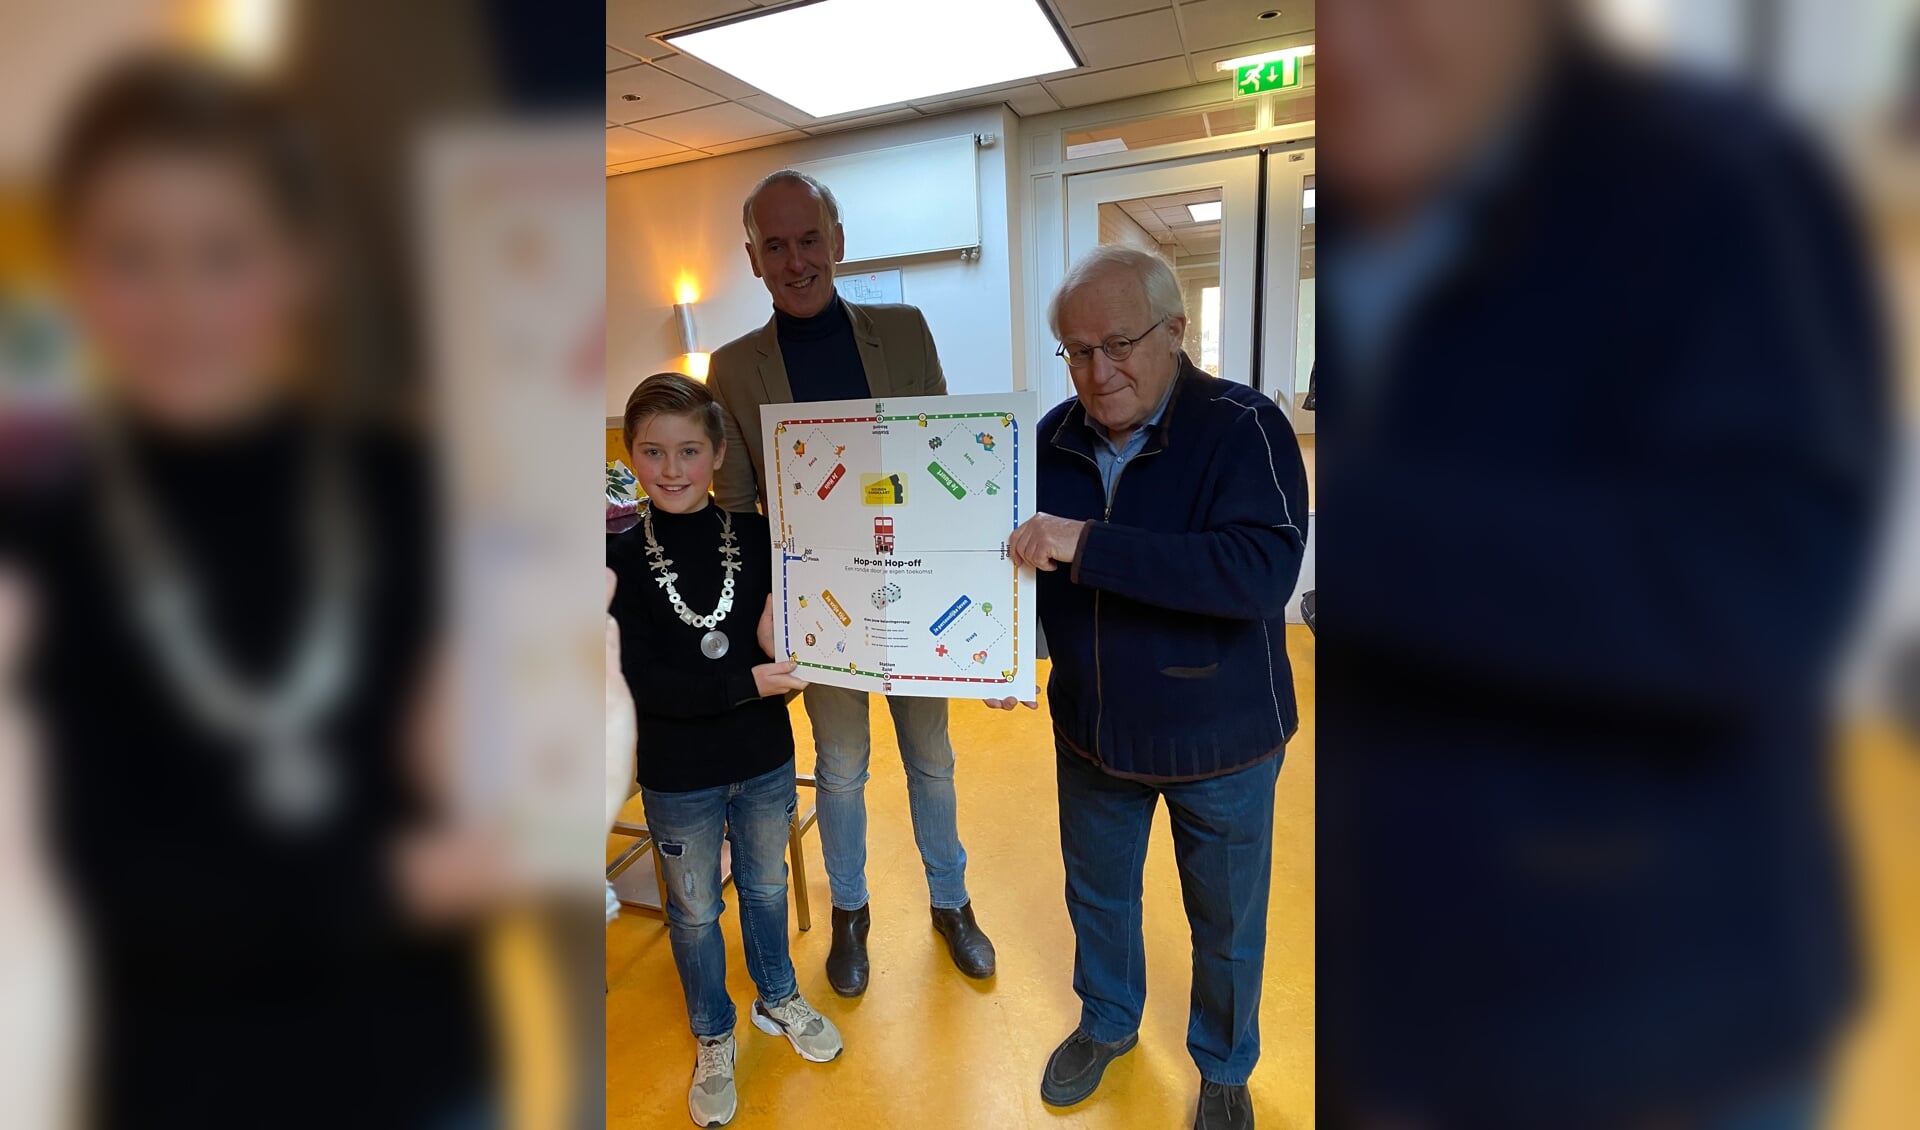 Marc Jansen met Thijmen, kinderburgemeester en Theo Voorn, coordinator huiskamer Oosterhout ontvangen het hop on hop off spel. (foto: Hester van Aalst)